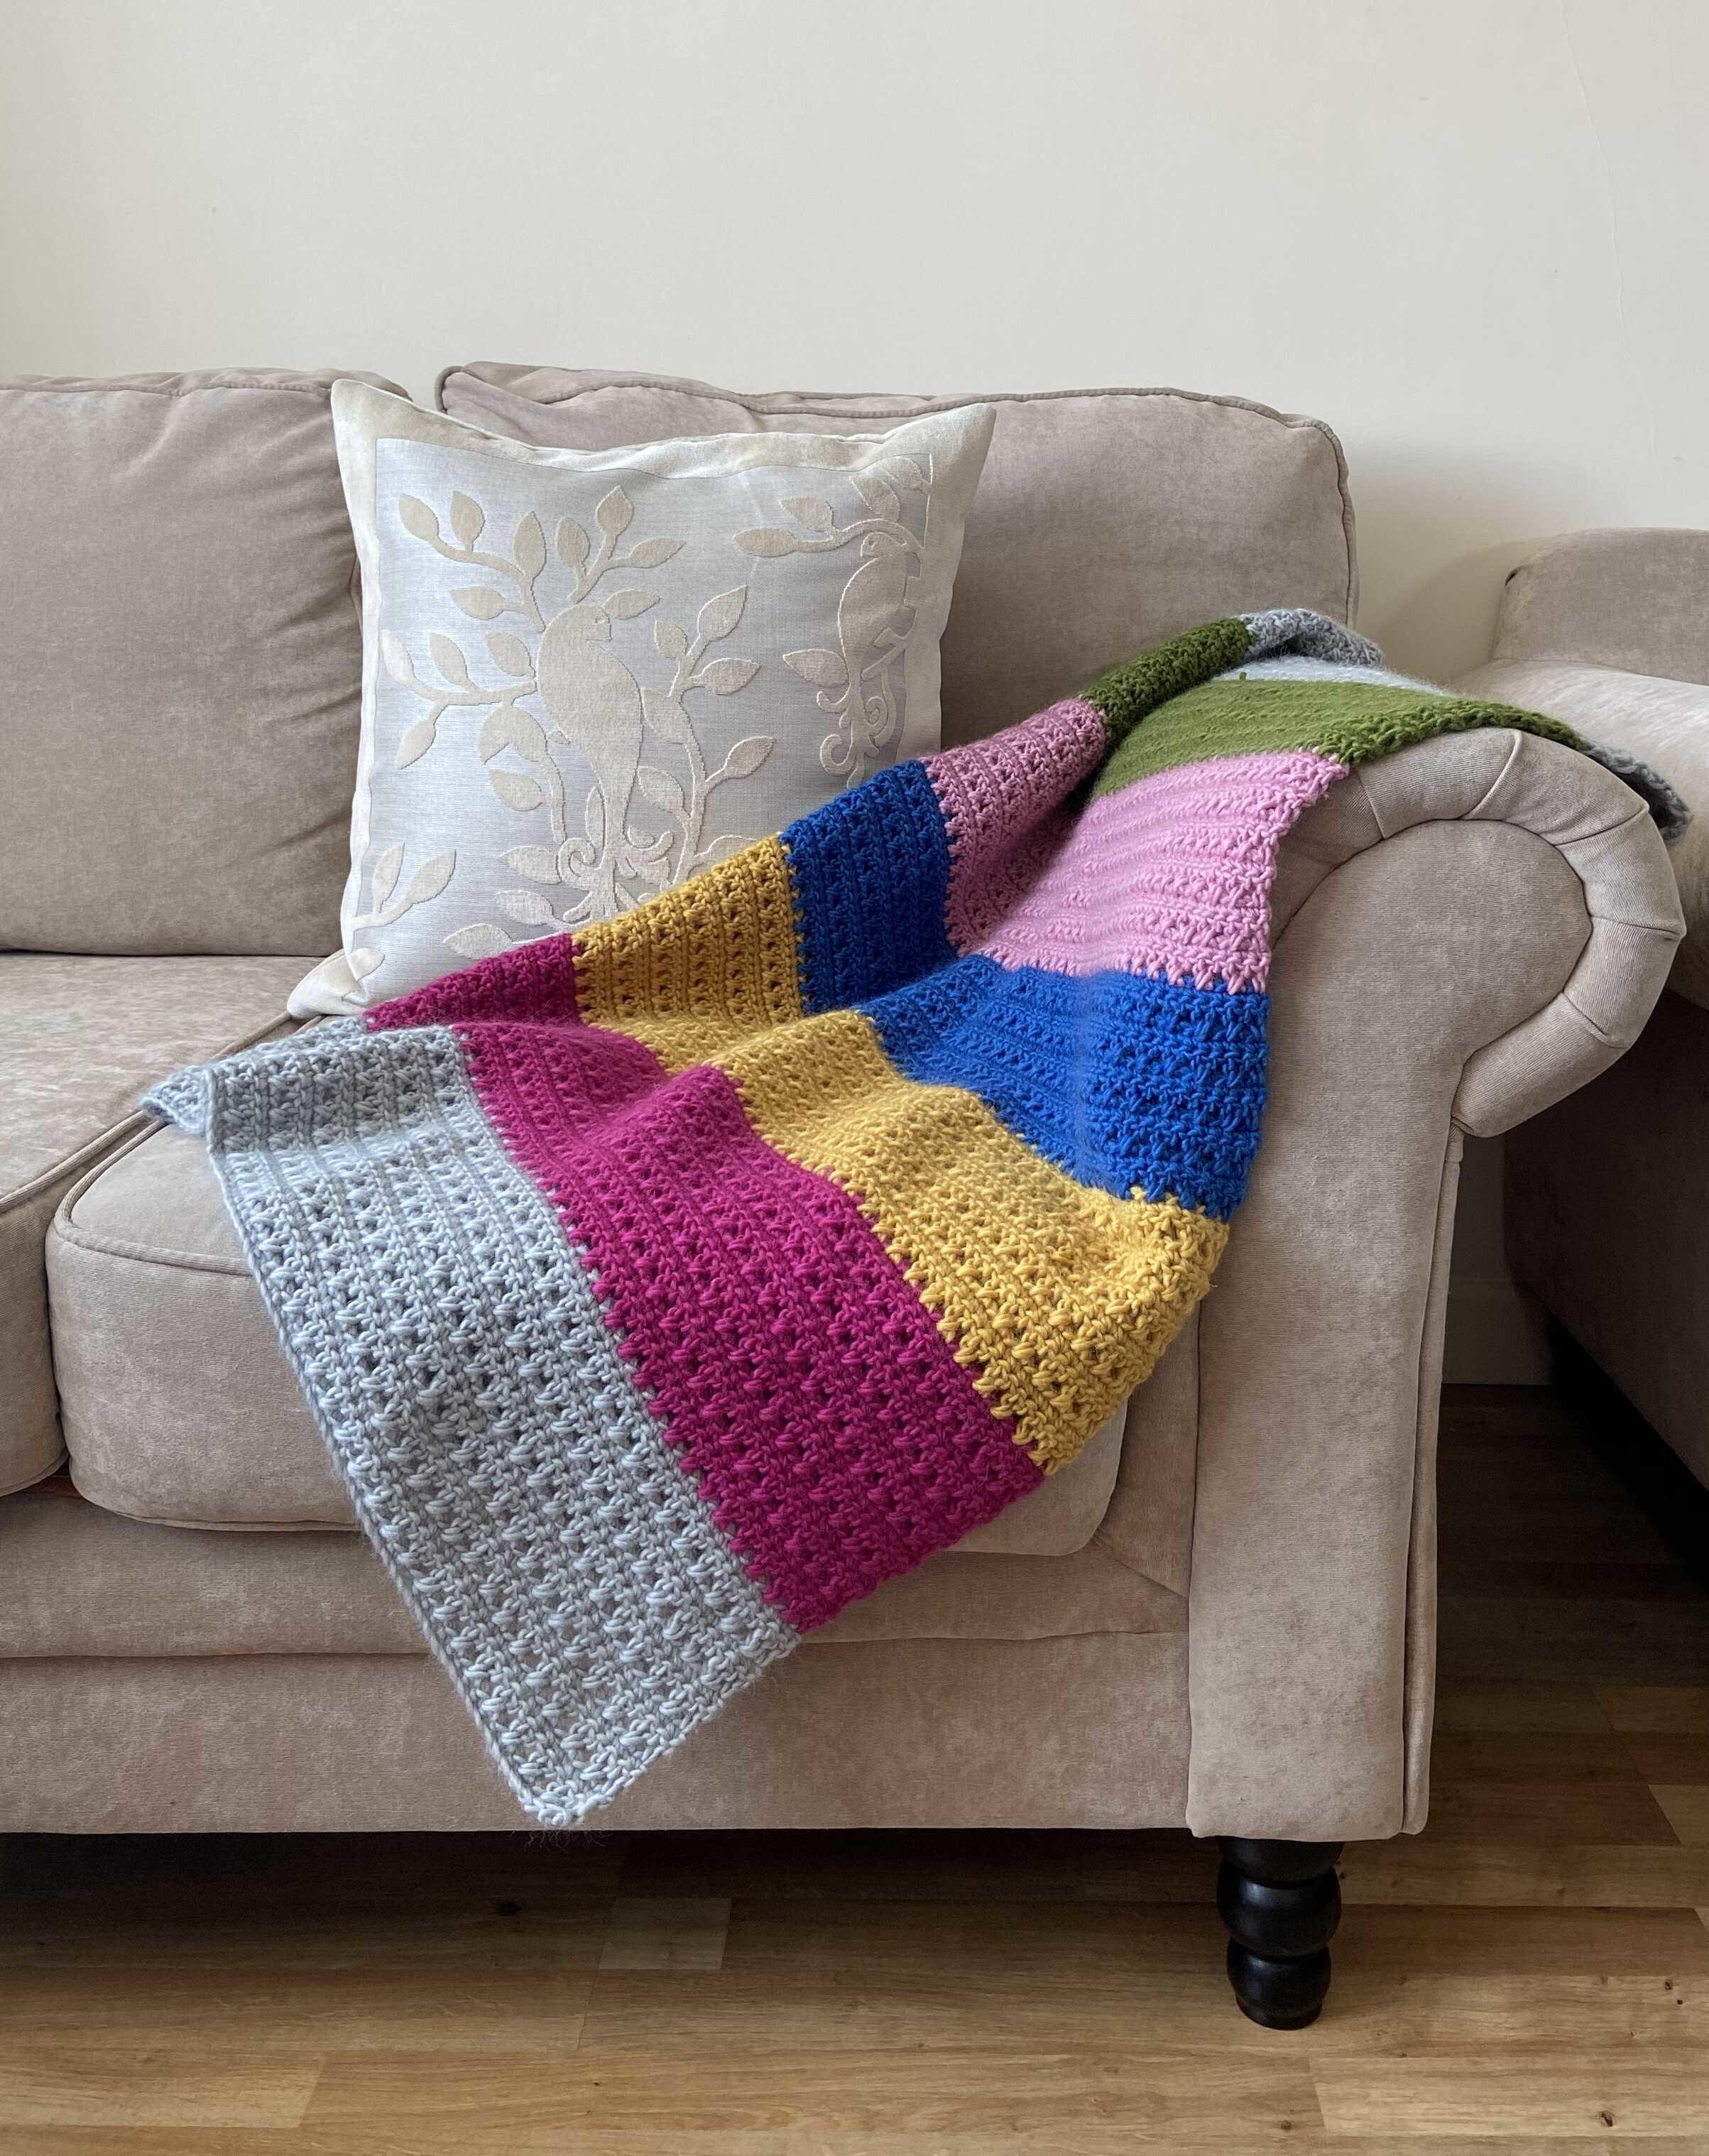 crochet-cottage-blanket-allfreecrochet